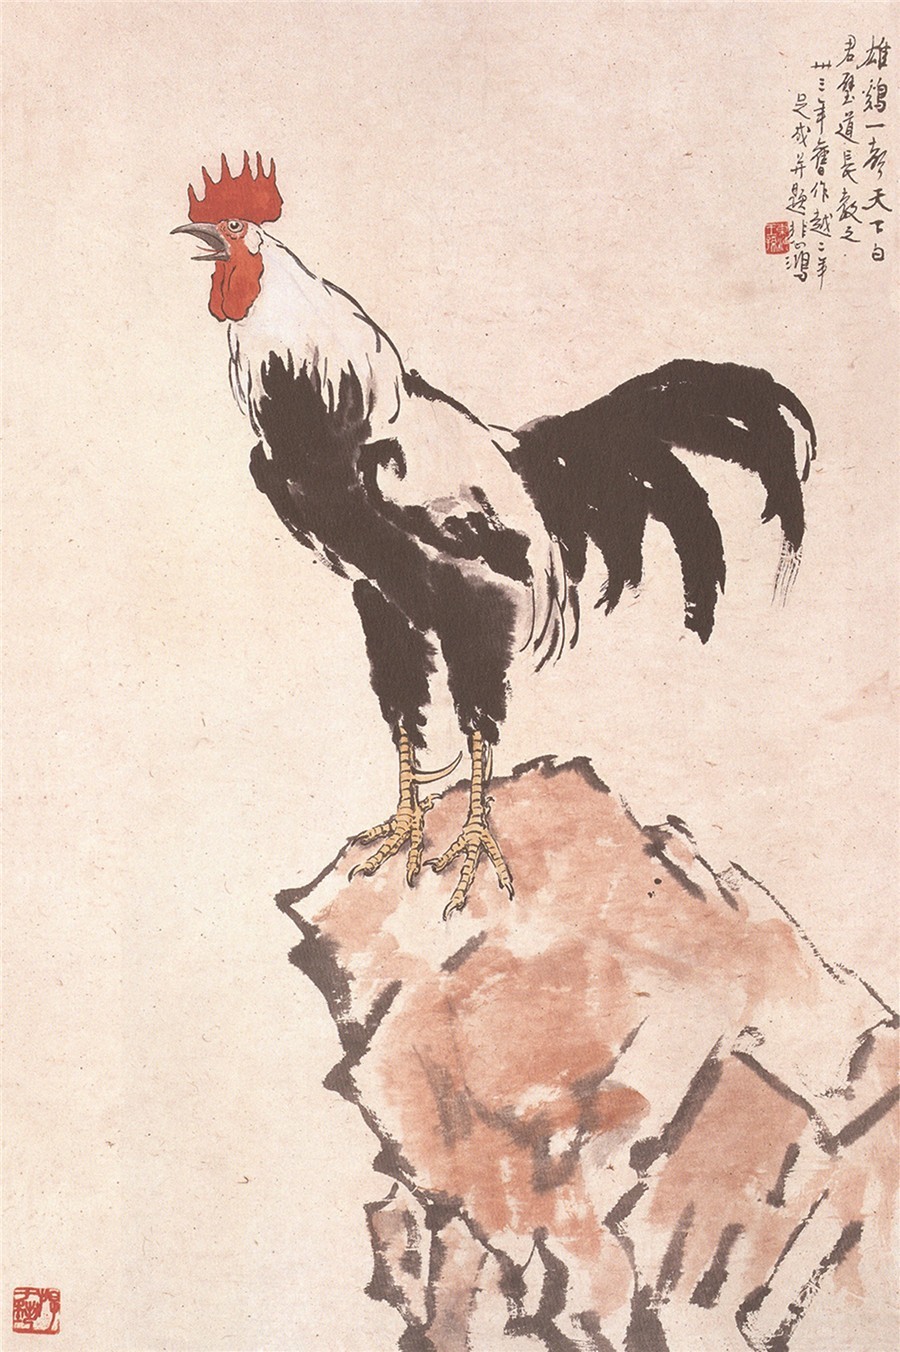 其中一幅《雨中鸡鸣》绘一只雄鸡霸气立于一块大石上,昂首挺胸,引吭